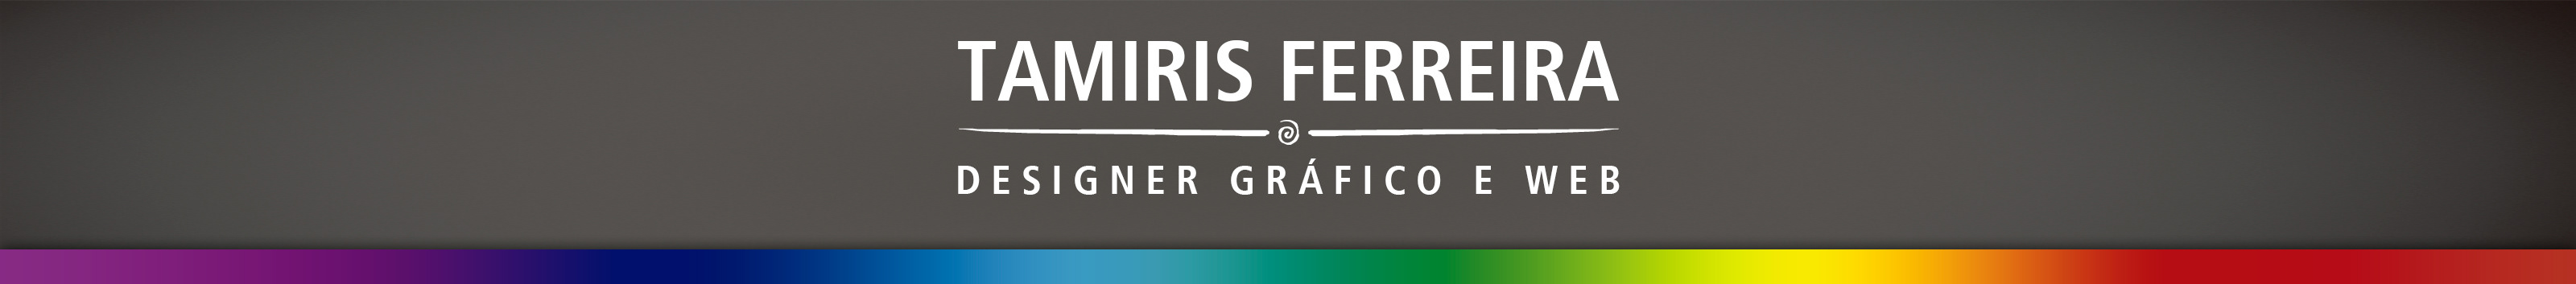 Tamiris Ferreira's profile banner